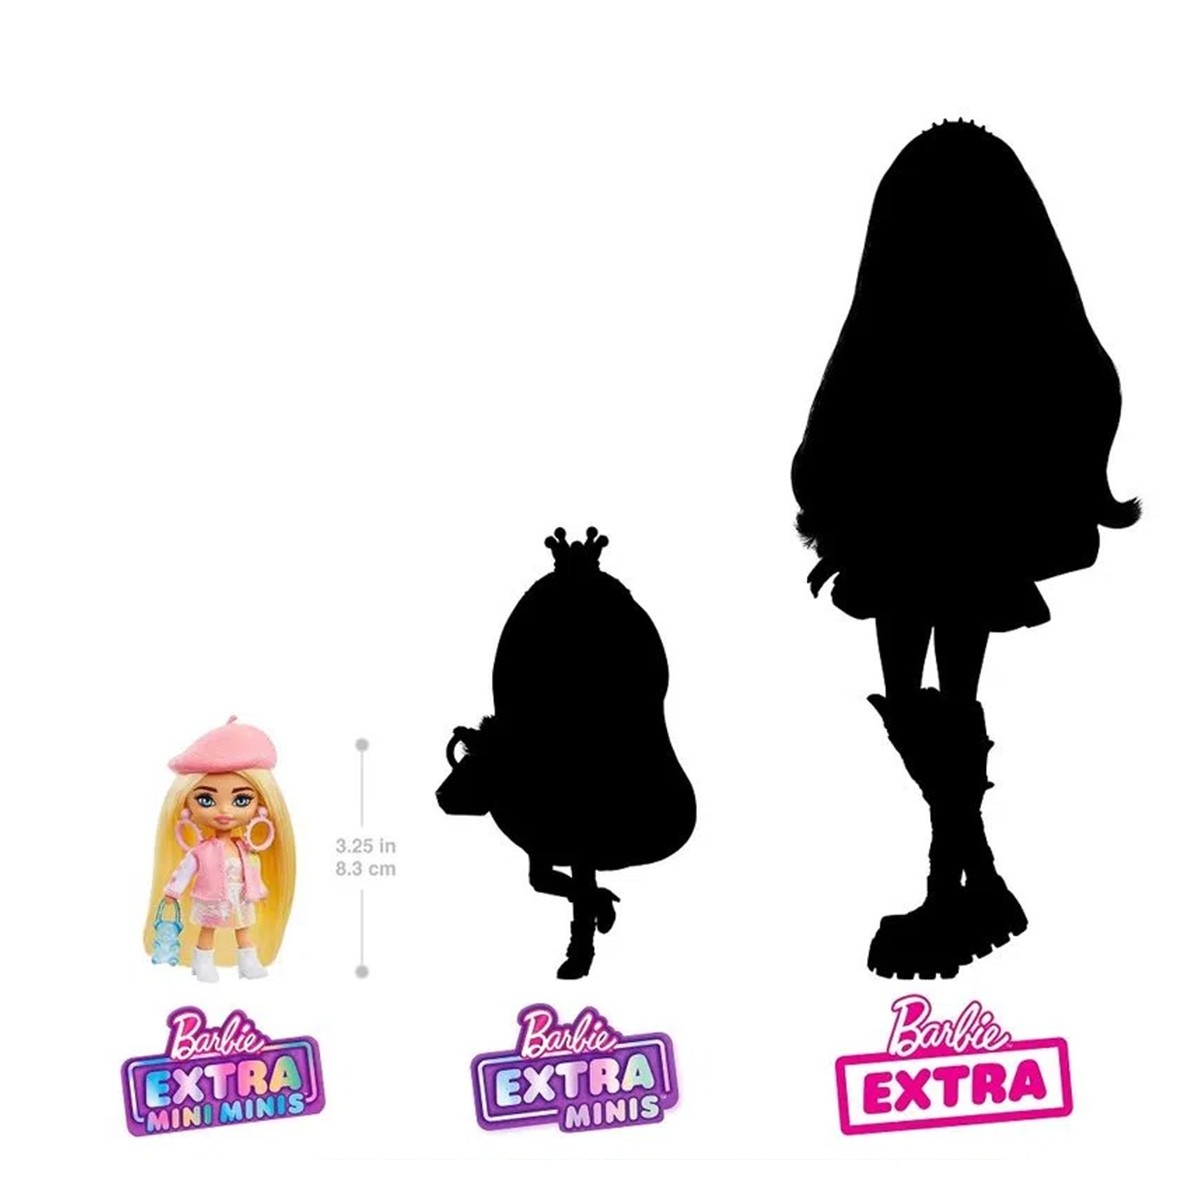 Barbie Extra Kit Roupas e Acessorios com Pet - Mattel